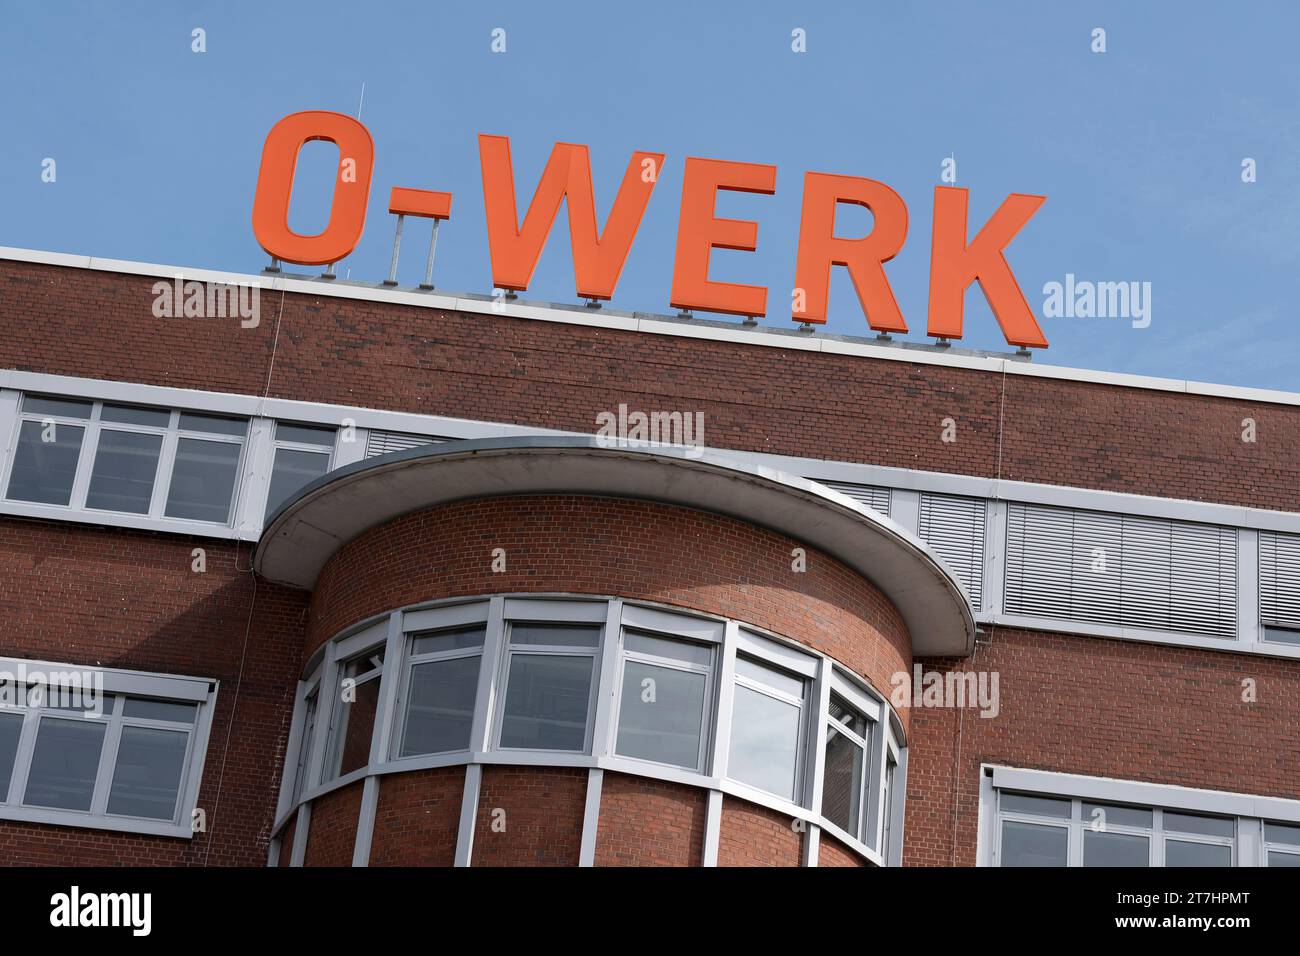 O-Werk. Sur le site désaffecté de l'usine Opel MARK 517, une nouvelle vie est créée dans un quartier de bureaux innovant du futur. Banque D'Images